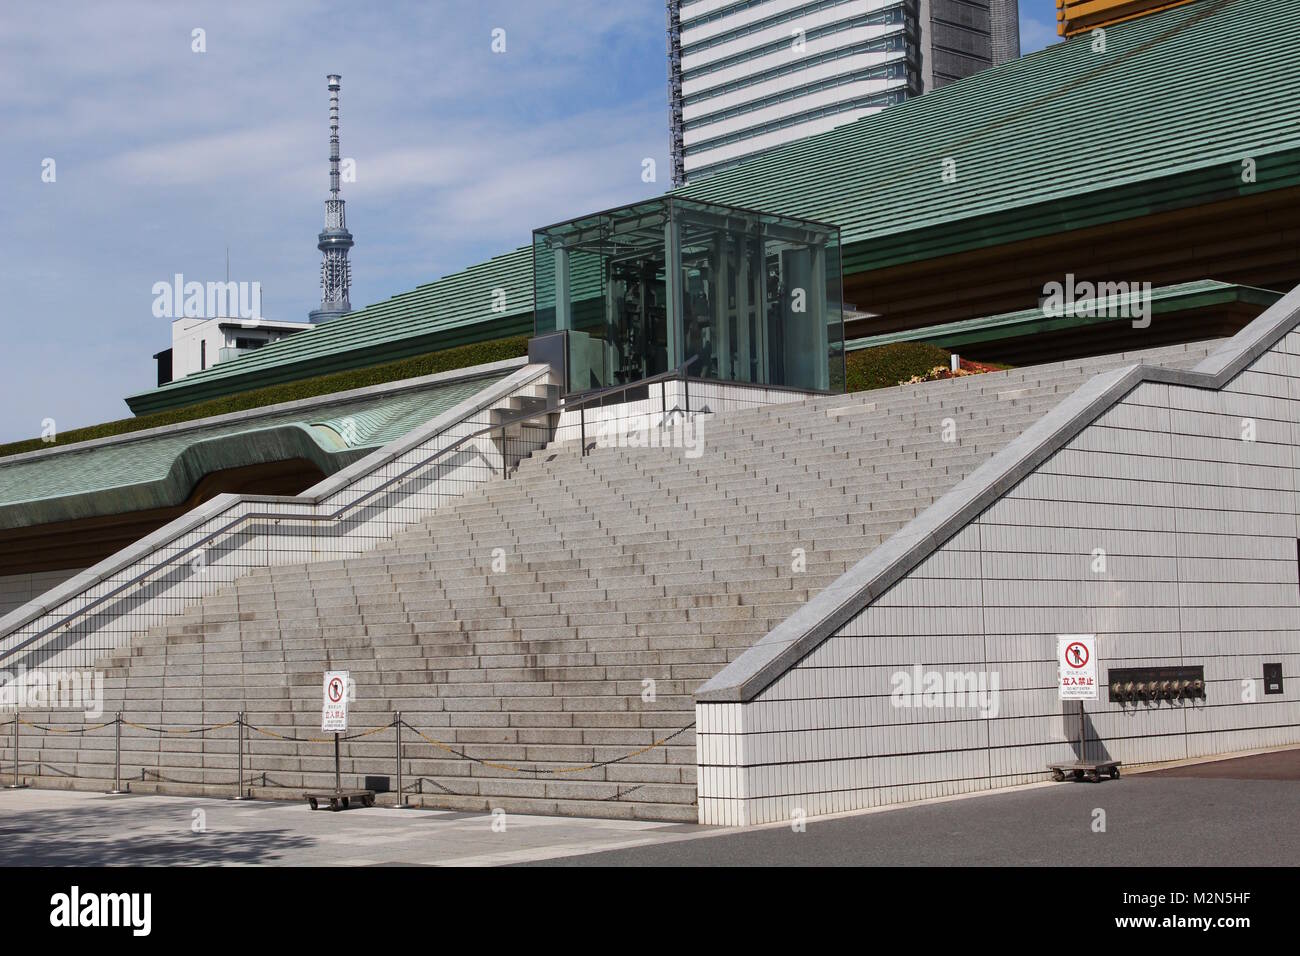 Der Ryogoku Kokugikan, eine Sportarena hauptsächlich für Sumo mit Tokyo Skytree im Hintergrund verwendet. Es wird als Veranstaltungsort der Olympischen Spiele 2020 eingesetzt werden. Stockfoto